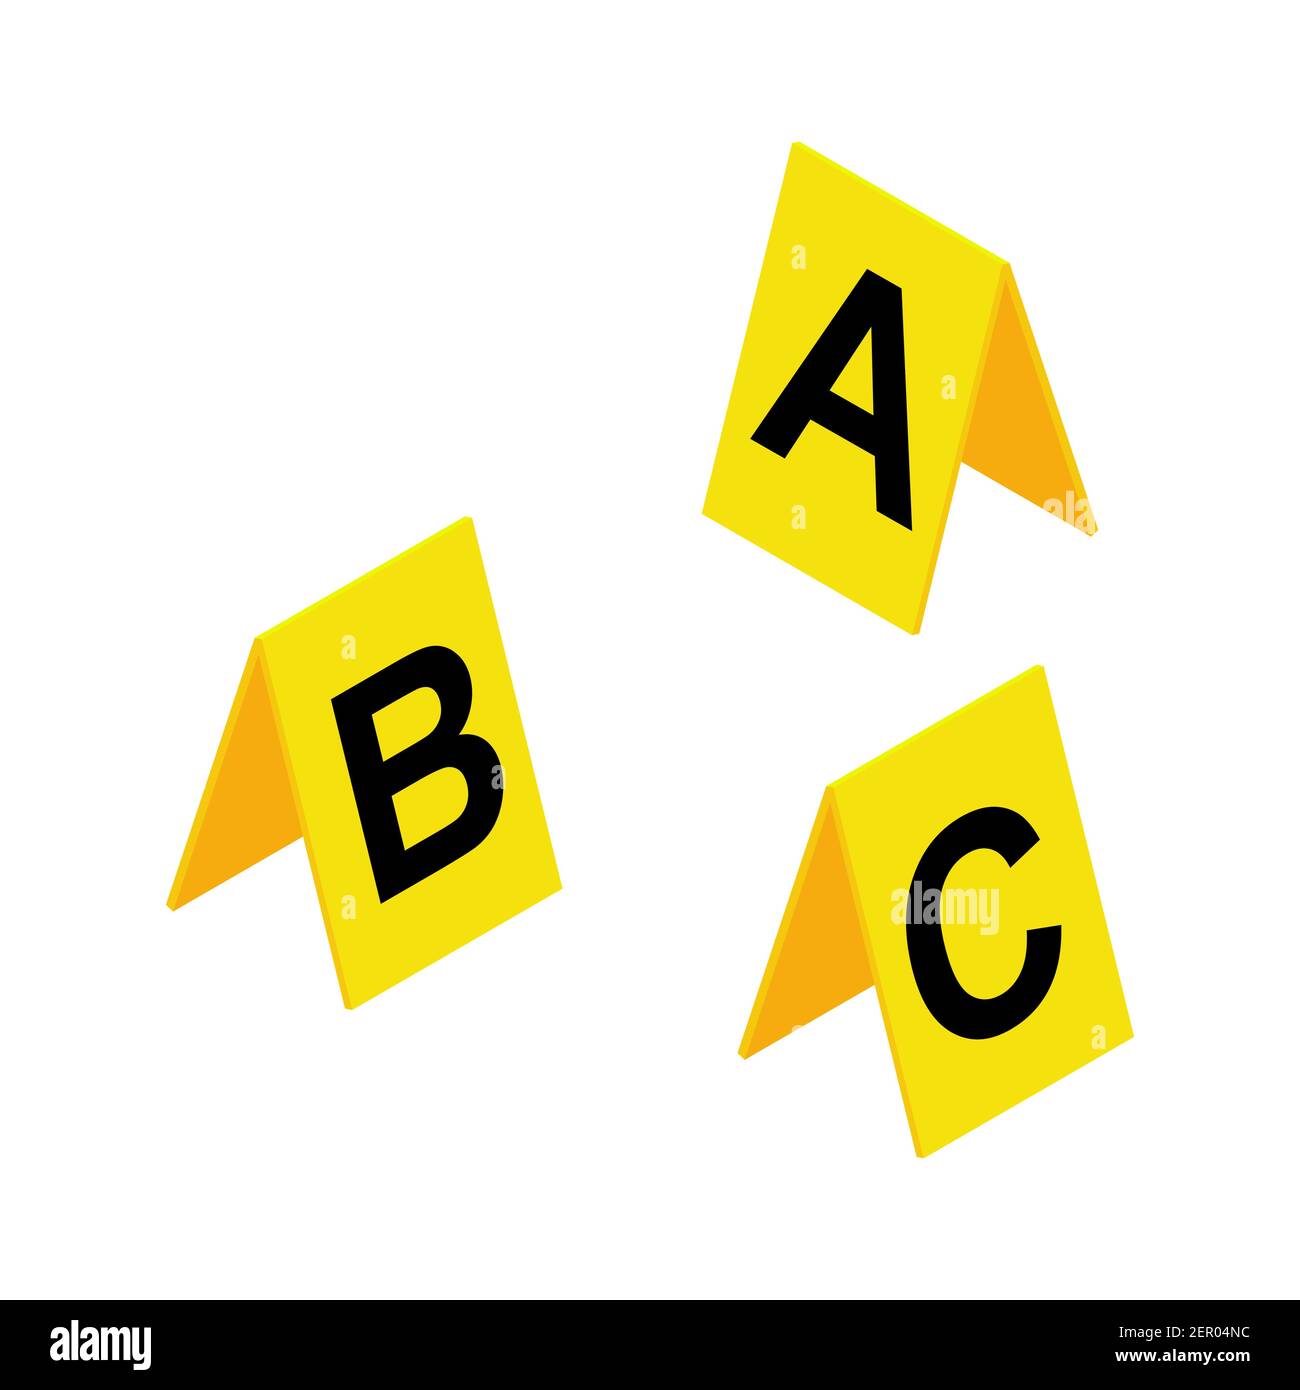 Simbolo dei marcatori di scena del crimine. Etichetta investigativa in plastica gialla con lettere A, B, C. illustrazione vettoriale Criminalistica isolata su bianco ba Illustrazione Vettoriale